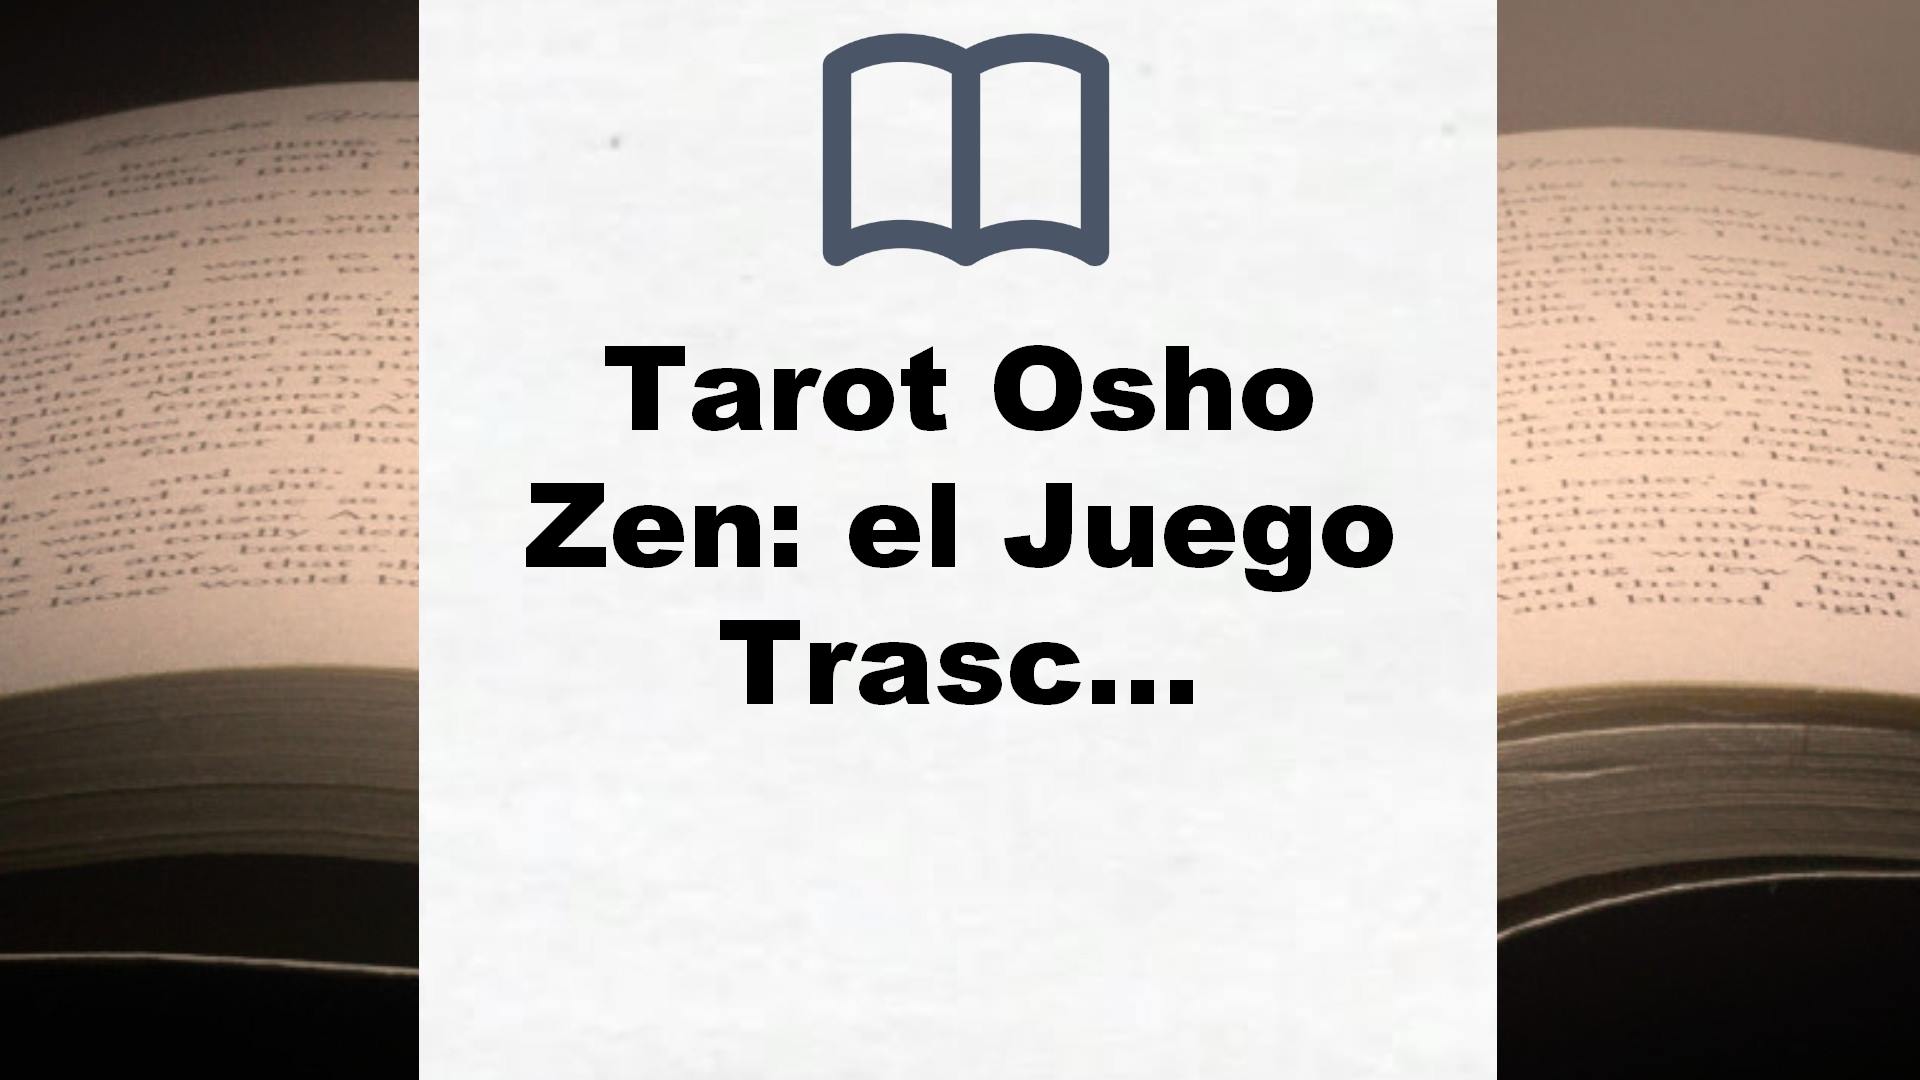 Tarot Osho Zen: el Juego Trascendental Del Zen (Tarot, oráculos y juegos) – Reseña del libro